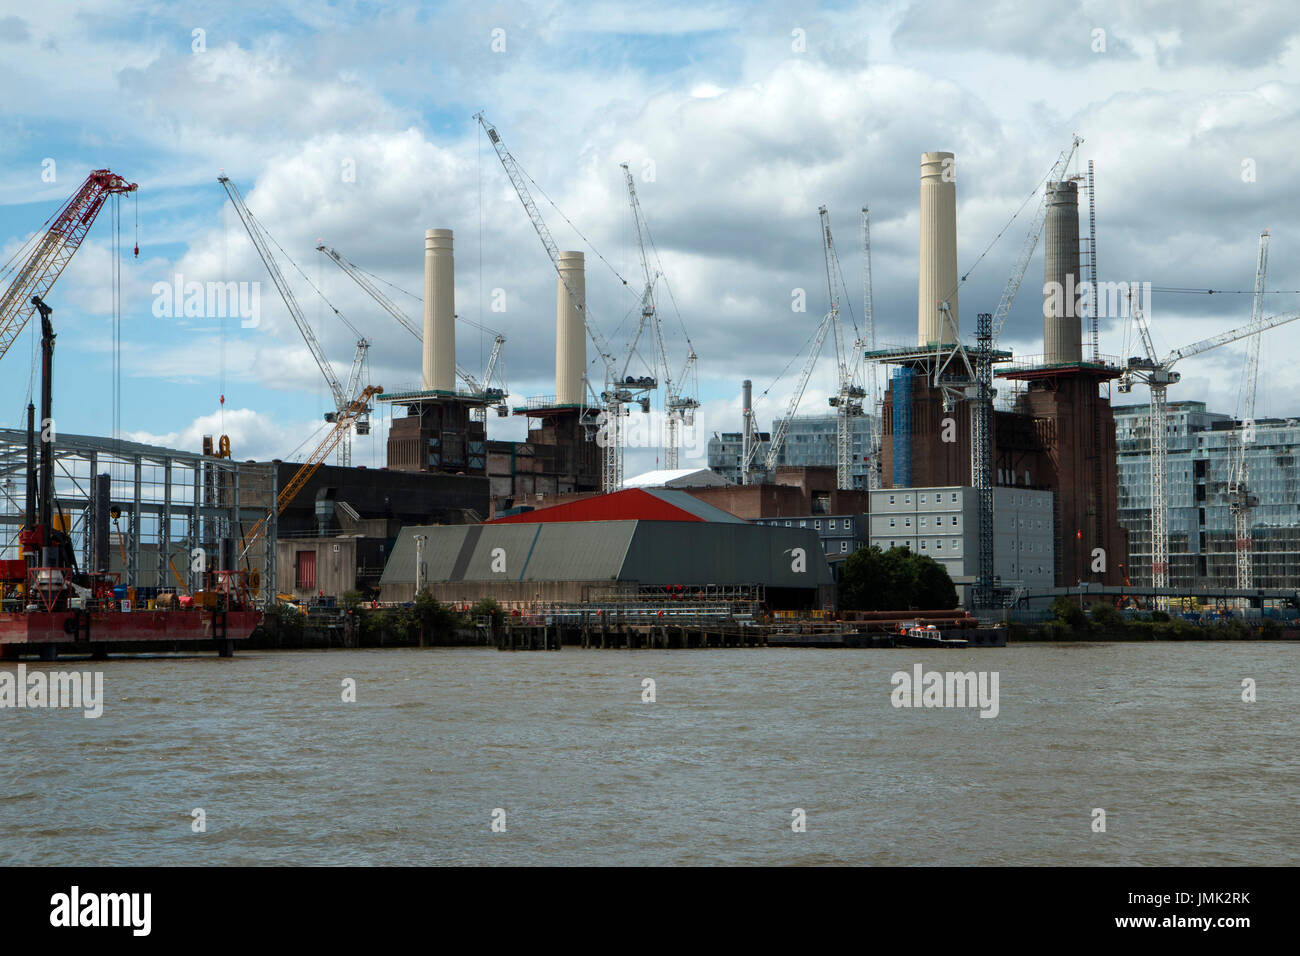 La célèbre Battersea Power Station, London UK L'objet d'importants travaux de réaménagement. Prises d'un bateau sur la Tamise Banque D'Images